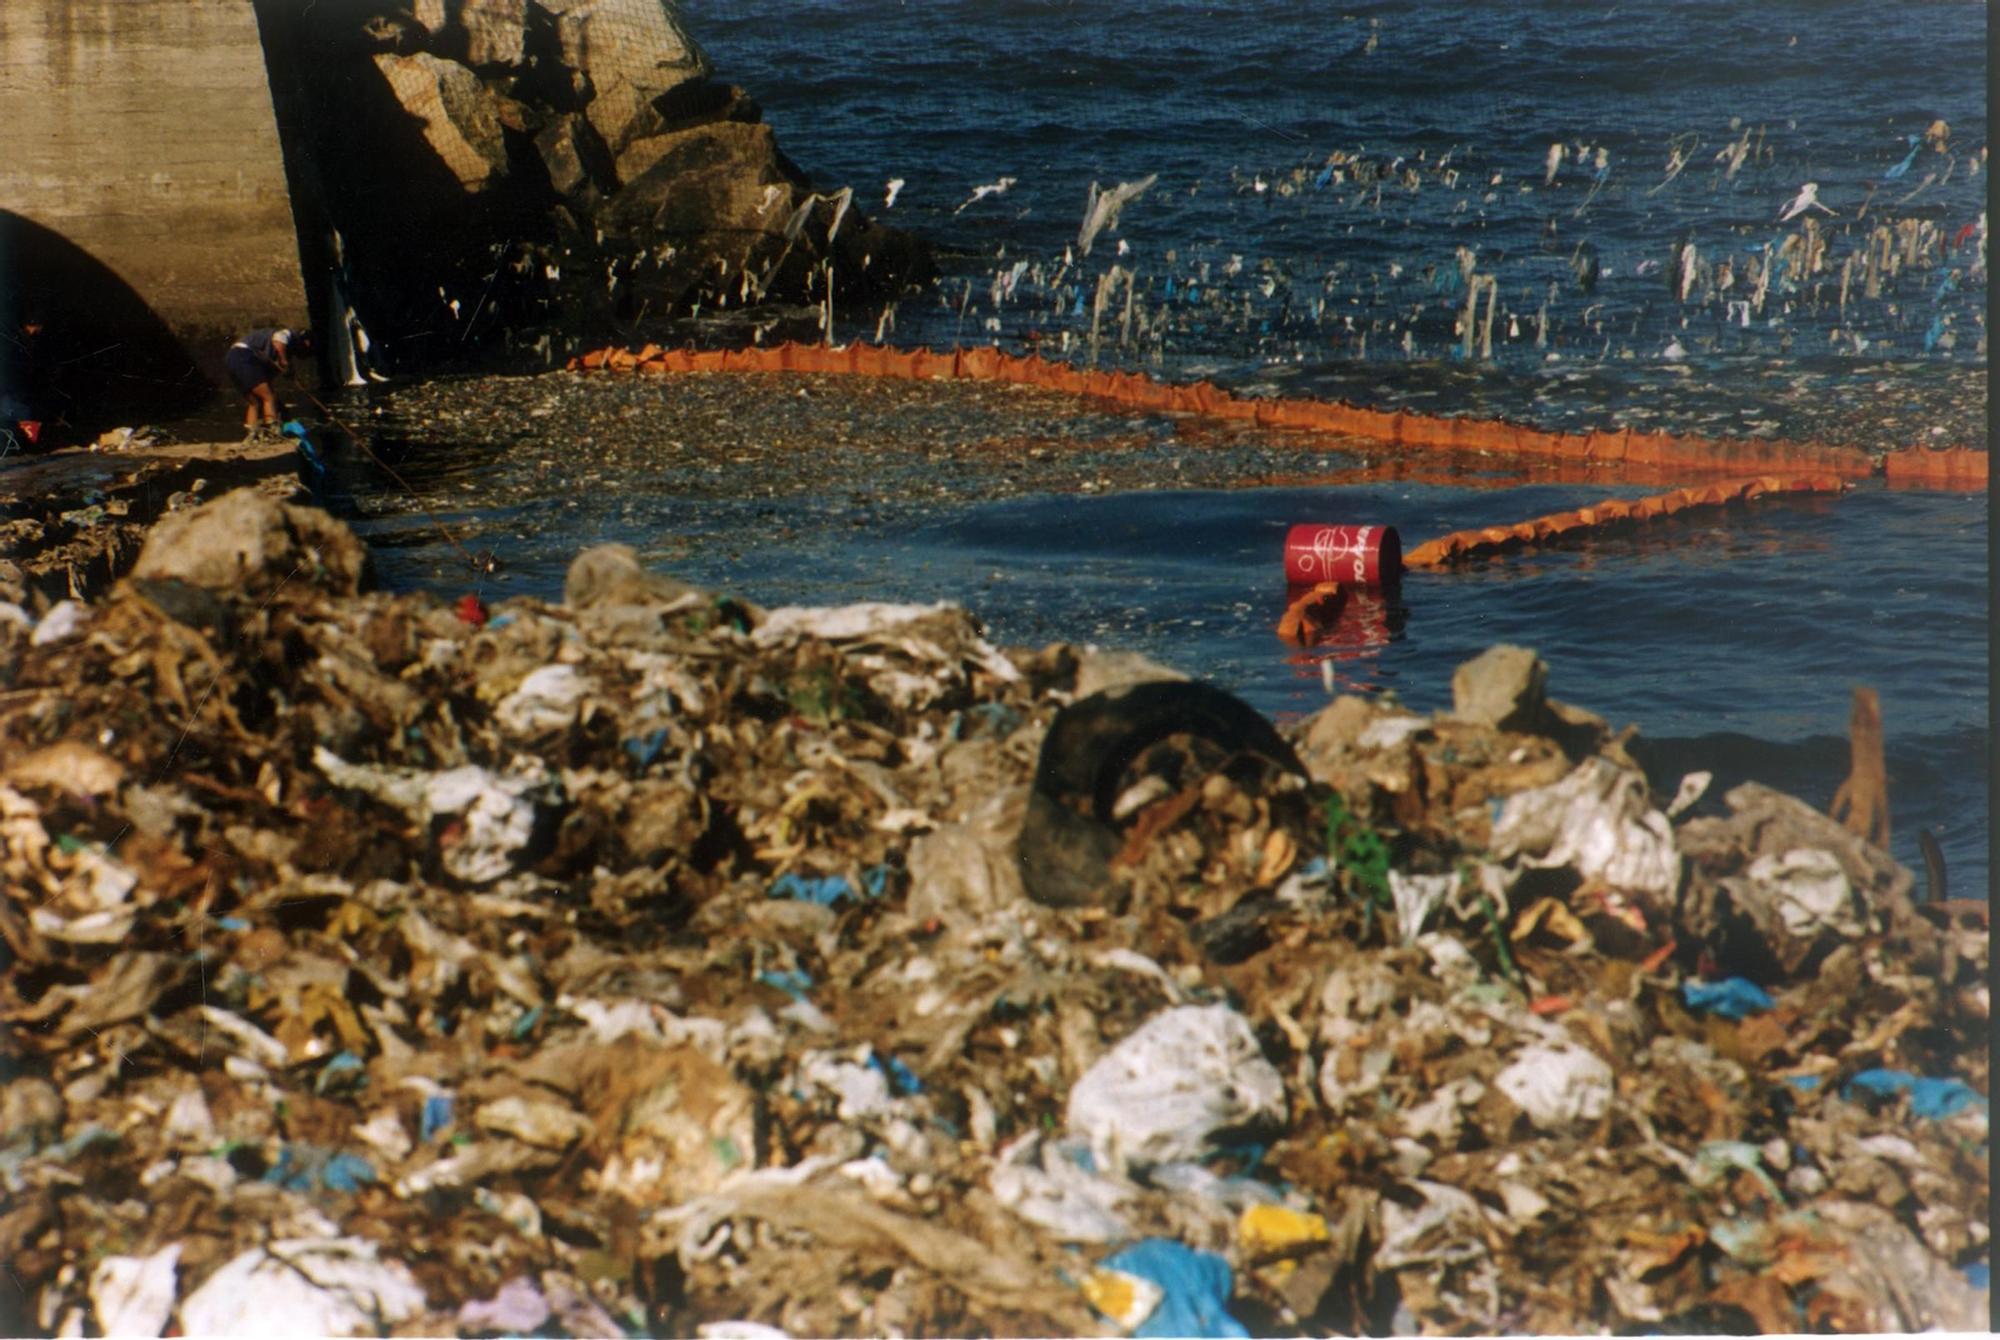 Derrumbe del vertedero de Bens en A Coruña en 1996 Víctor Echave 200.000 toneladas de basura (3).jpg